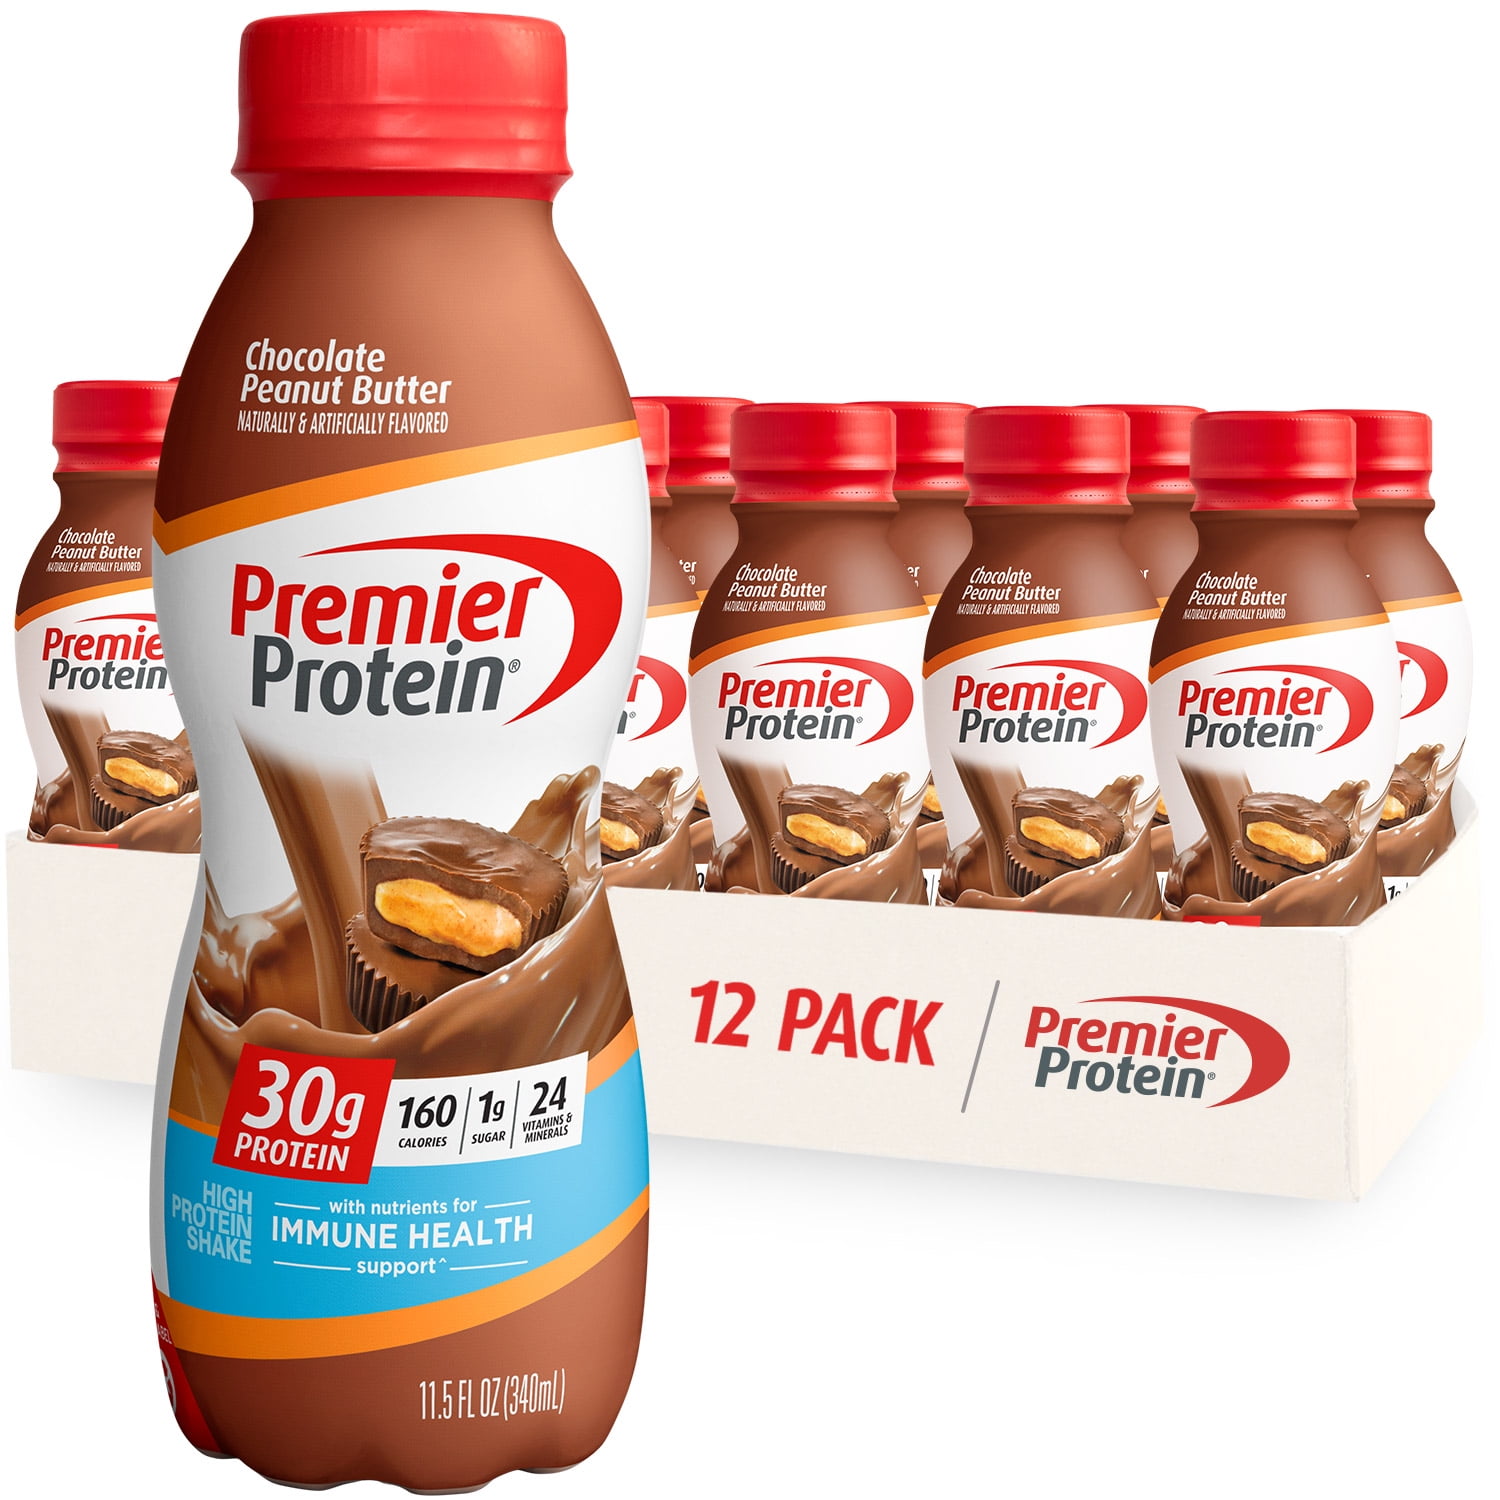 Premier Protein Shake, Chocolate Peanut Butter, 30g Protein, 11.5 Fl Oz, 12 Ct